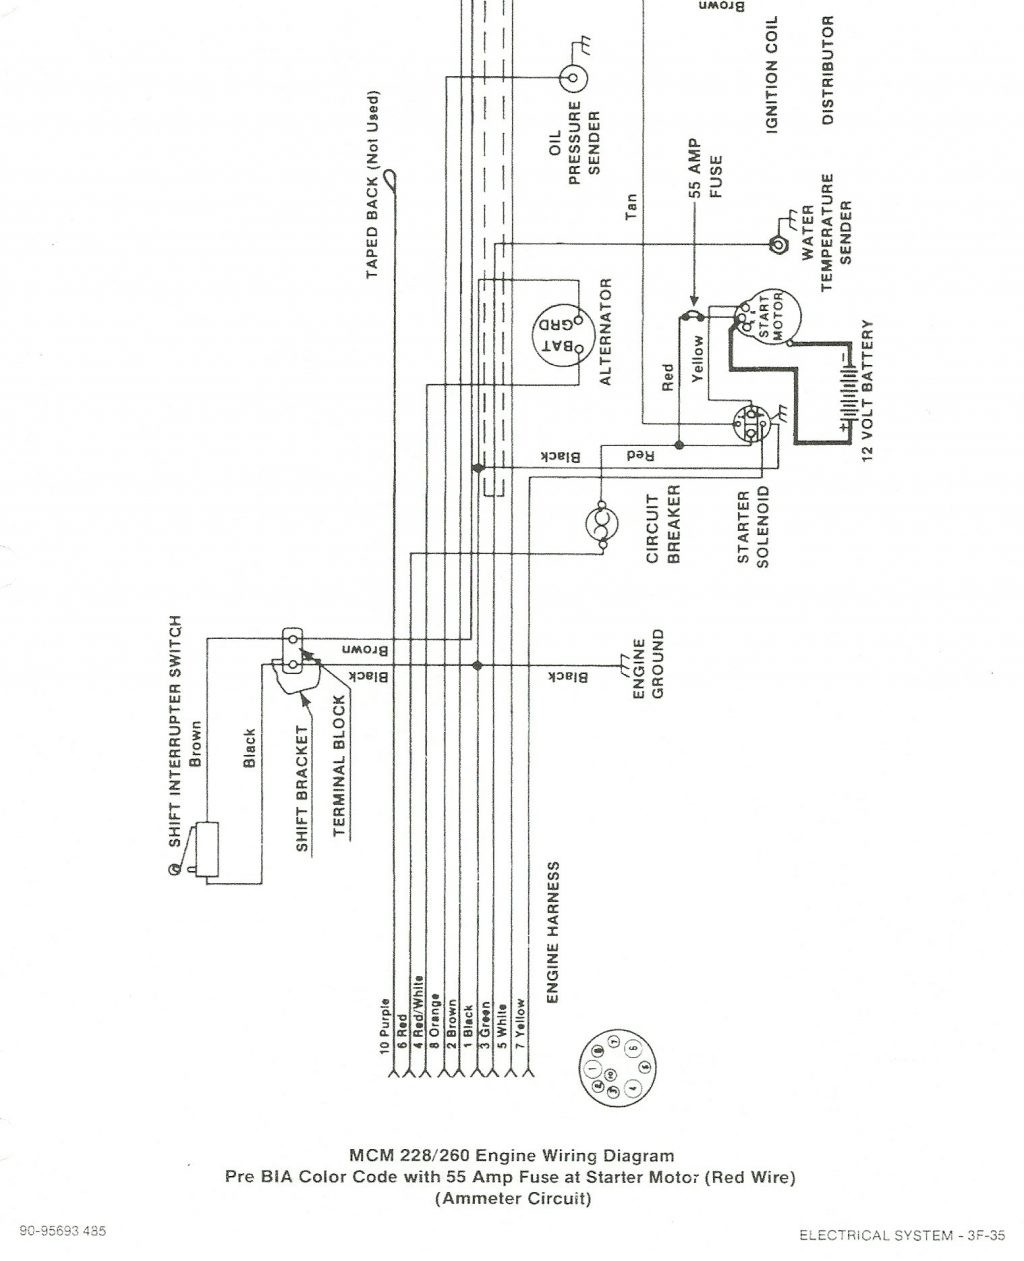 Mercruiser 4.3 V6 Wiring Diagram